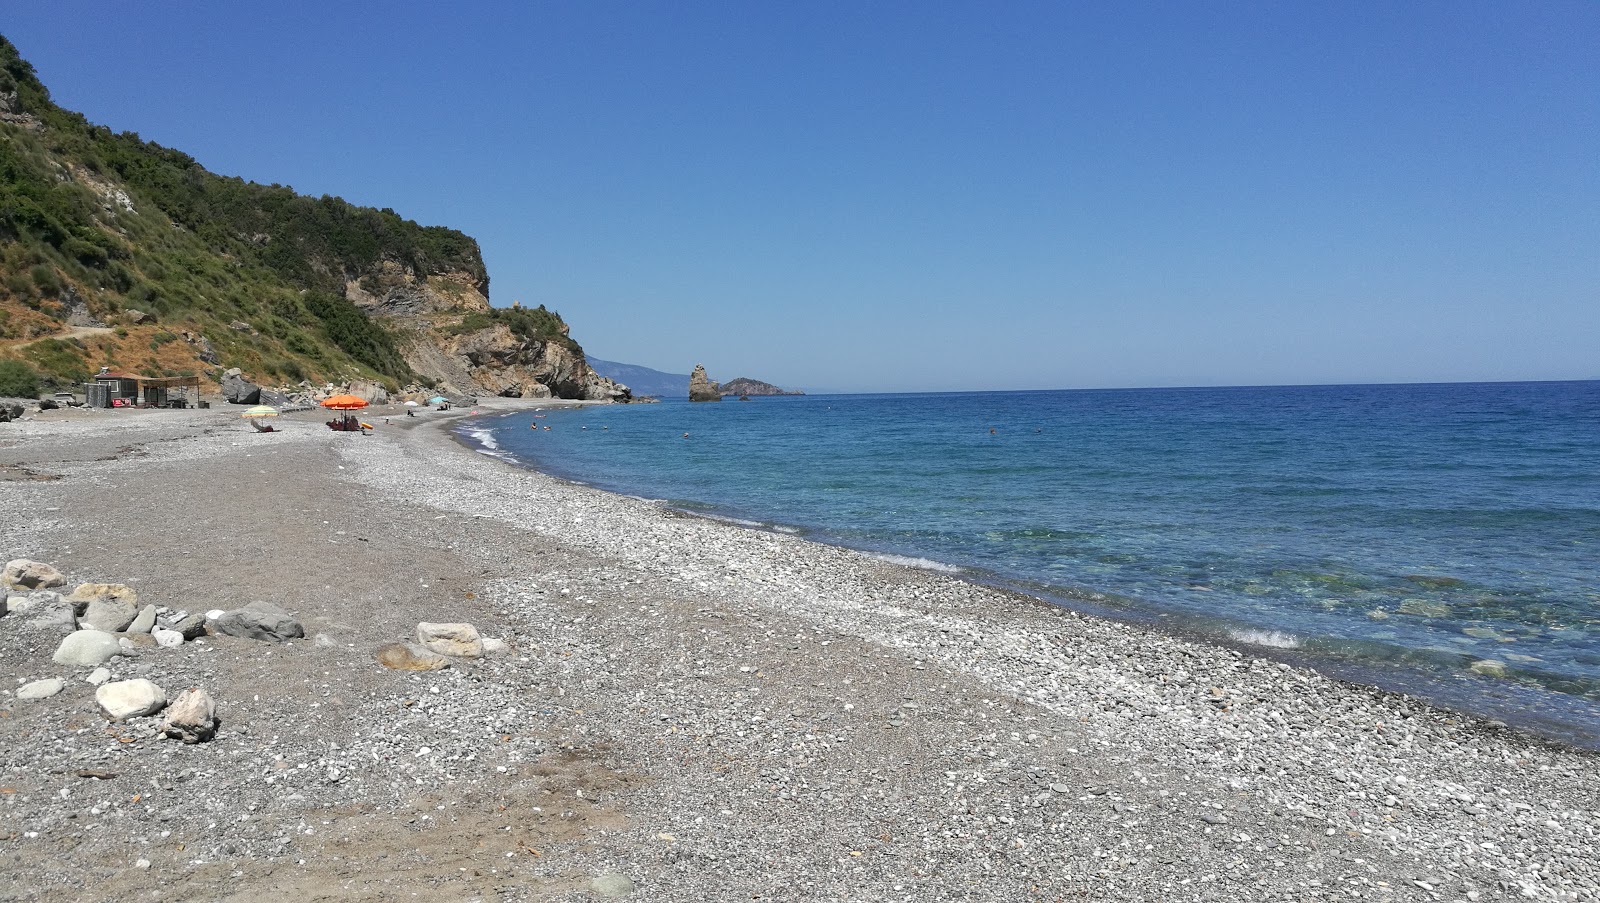 Foto av Metochiou beach med rymlig bukt